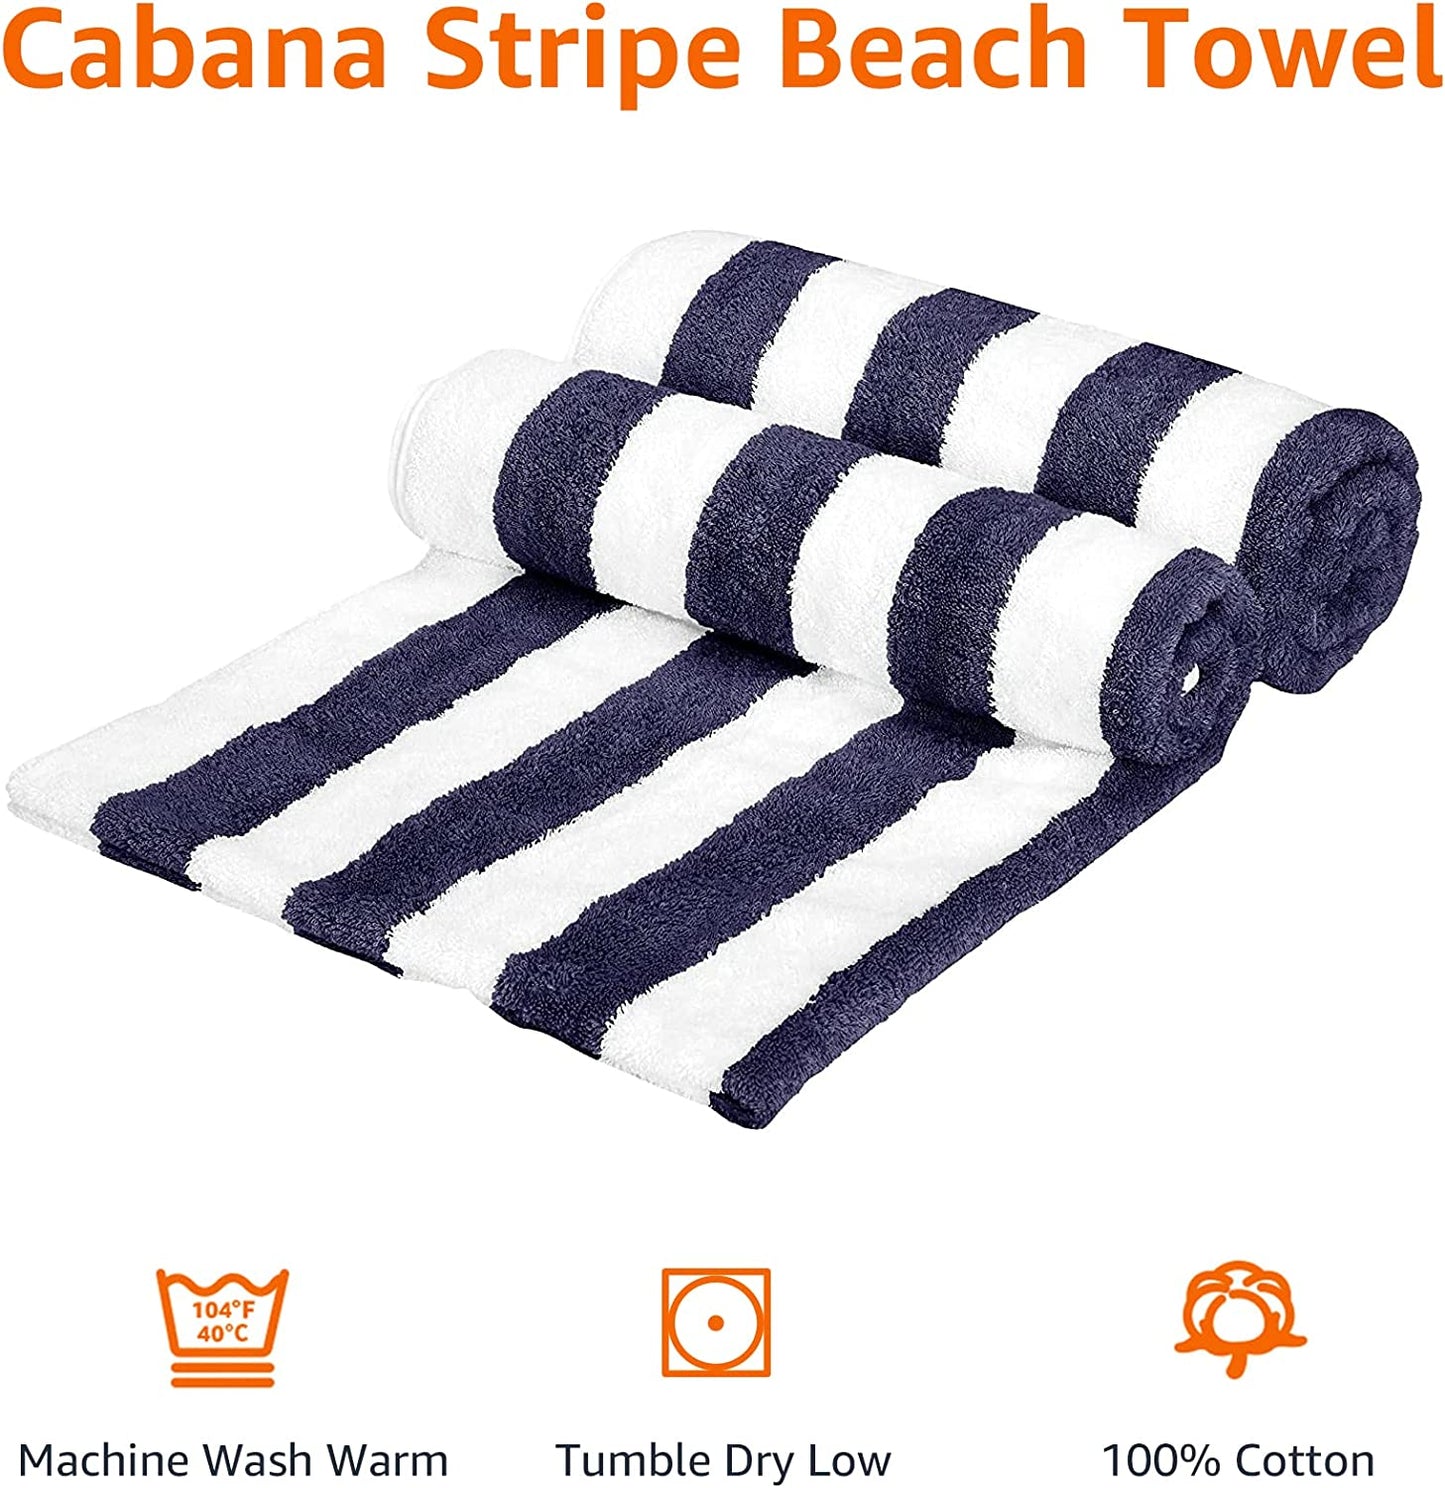 Toalla de Playa Cabana Stripe - Paquete de 2 unidades, Azul Marino